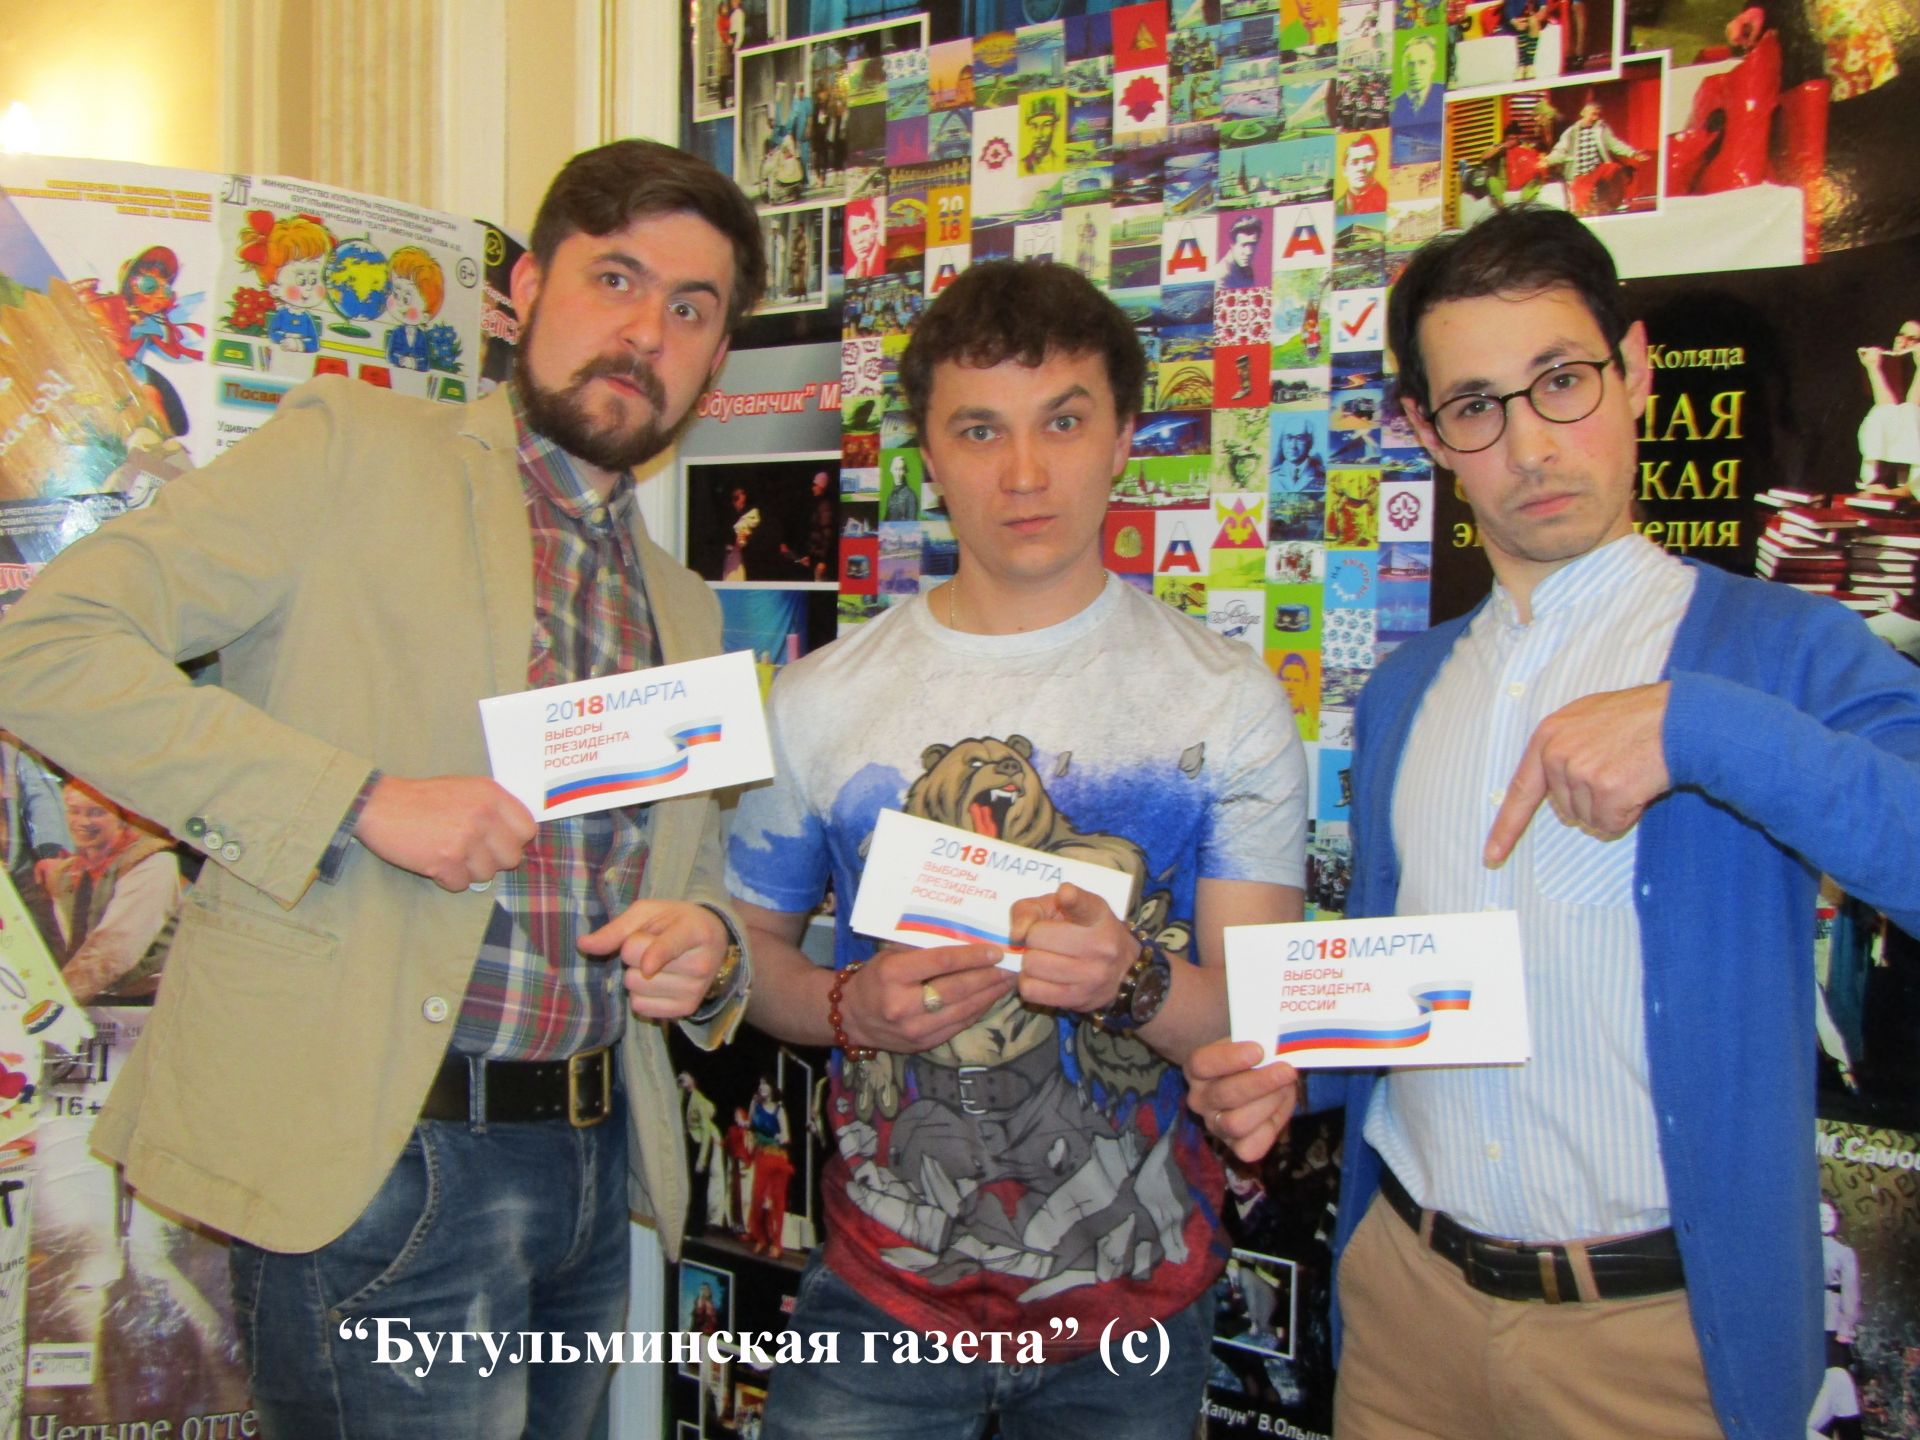 Бугульминские артисты приняли участие в акции "Айданавыборы"